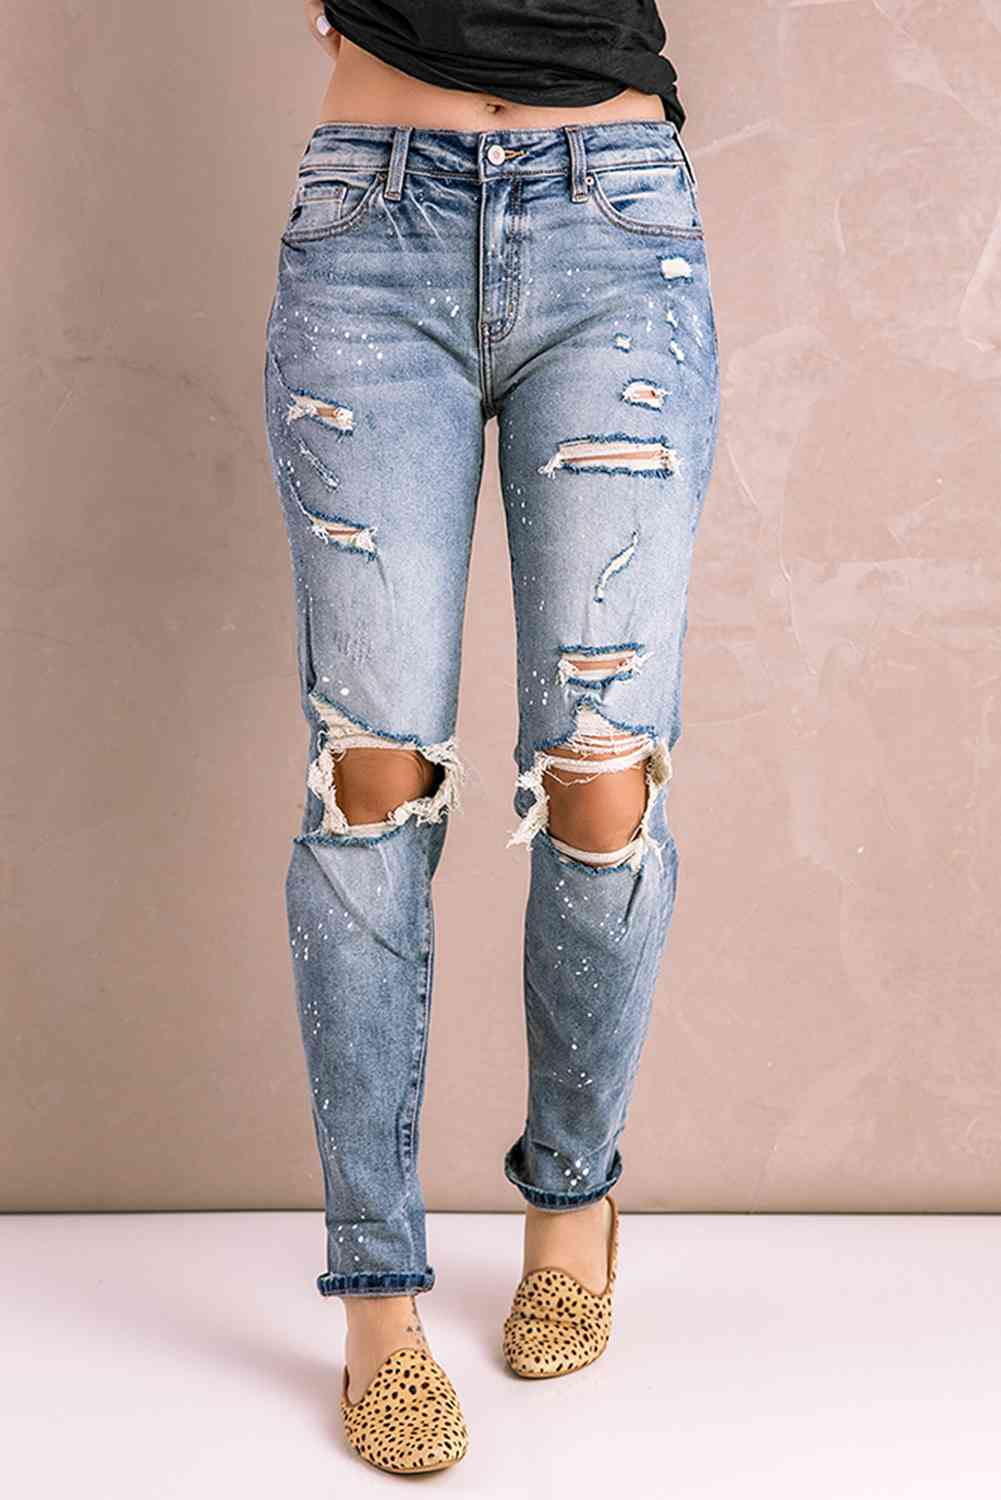 Baeful Splatter Distressed Acid Wash Jeans with Pockets Light Wash L